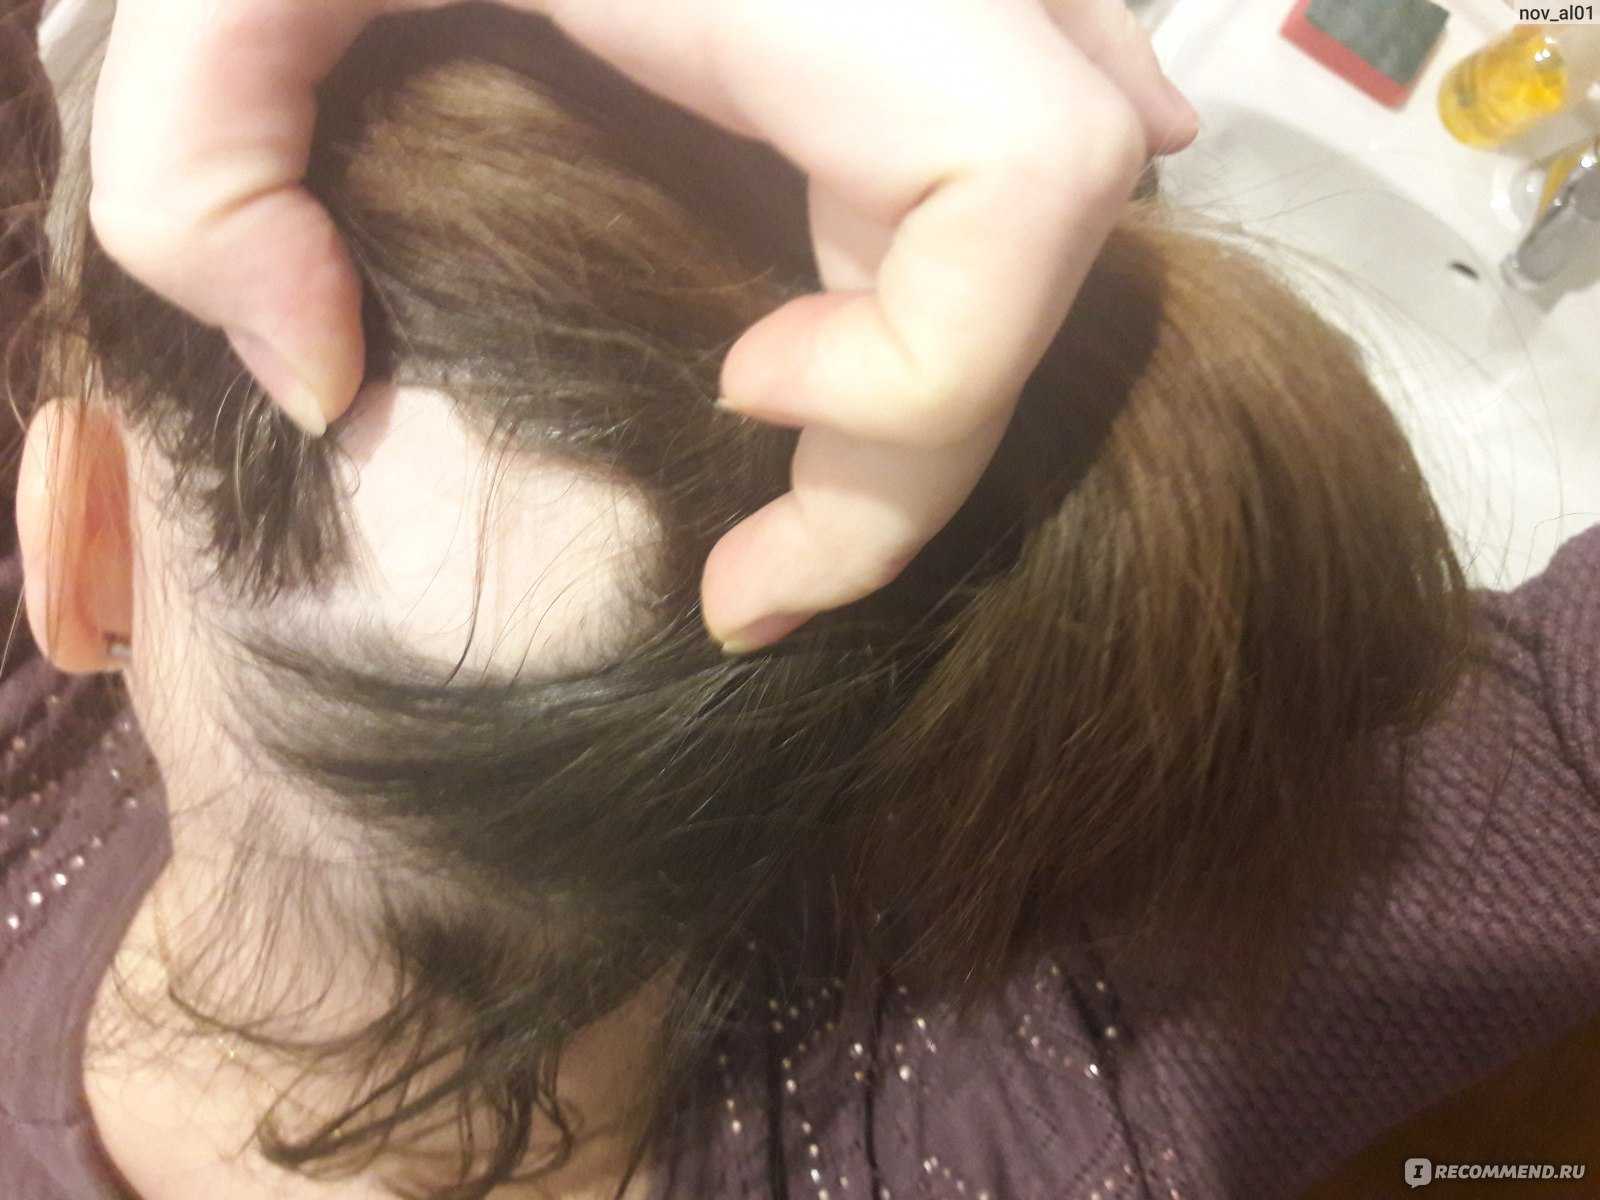 Топ-15 масок против выпадения волос в домашних условиях | poudre.ru